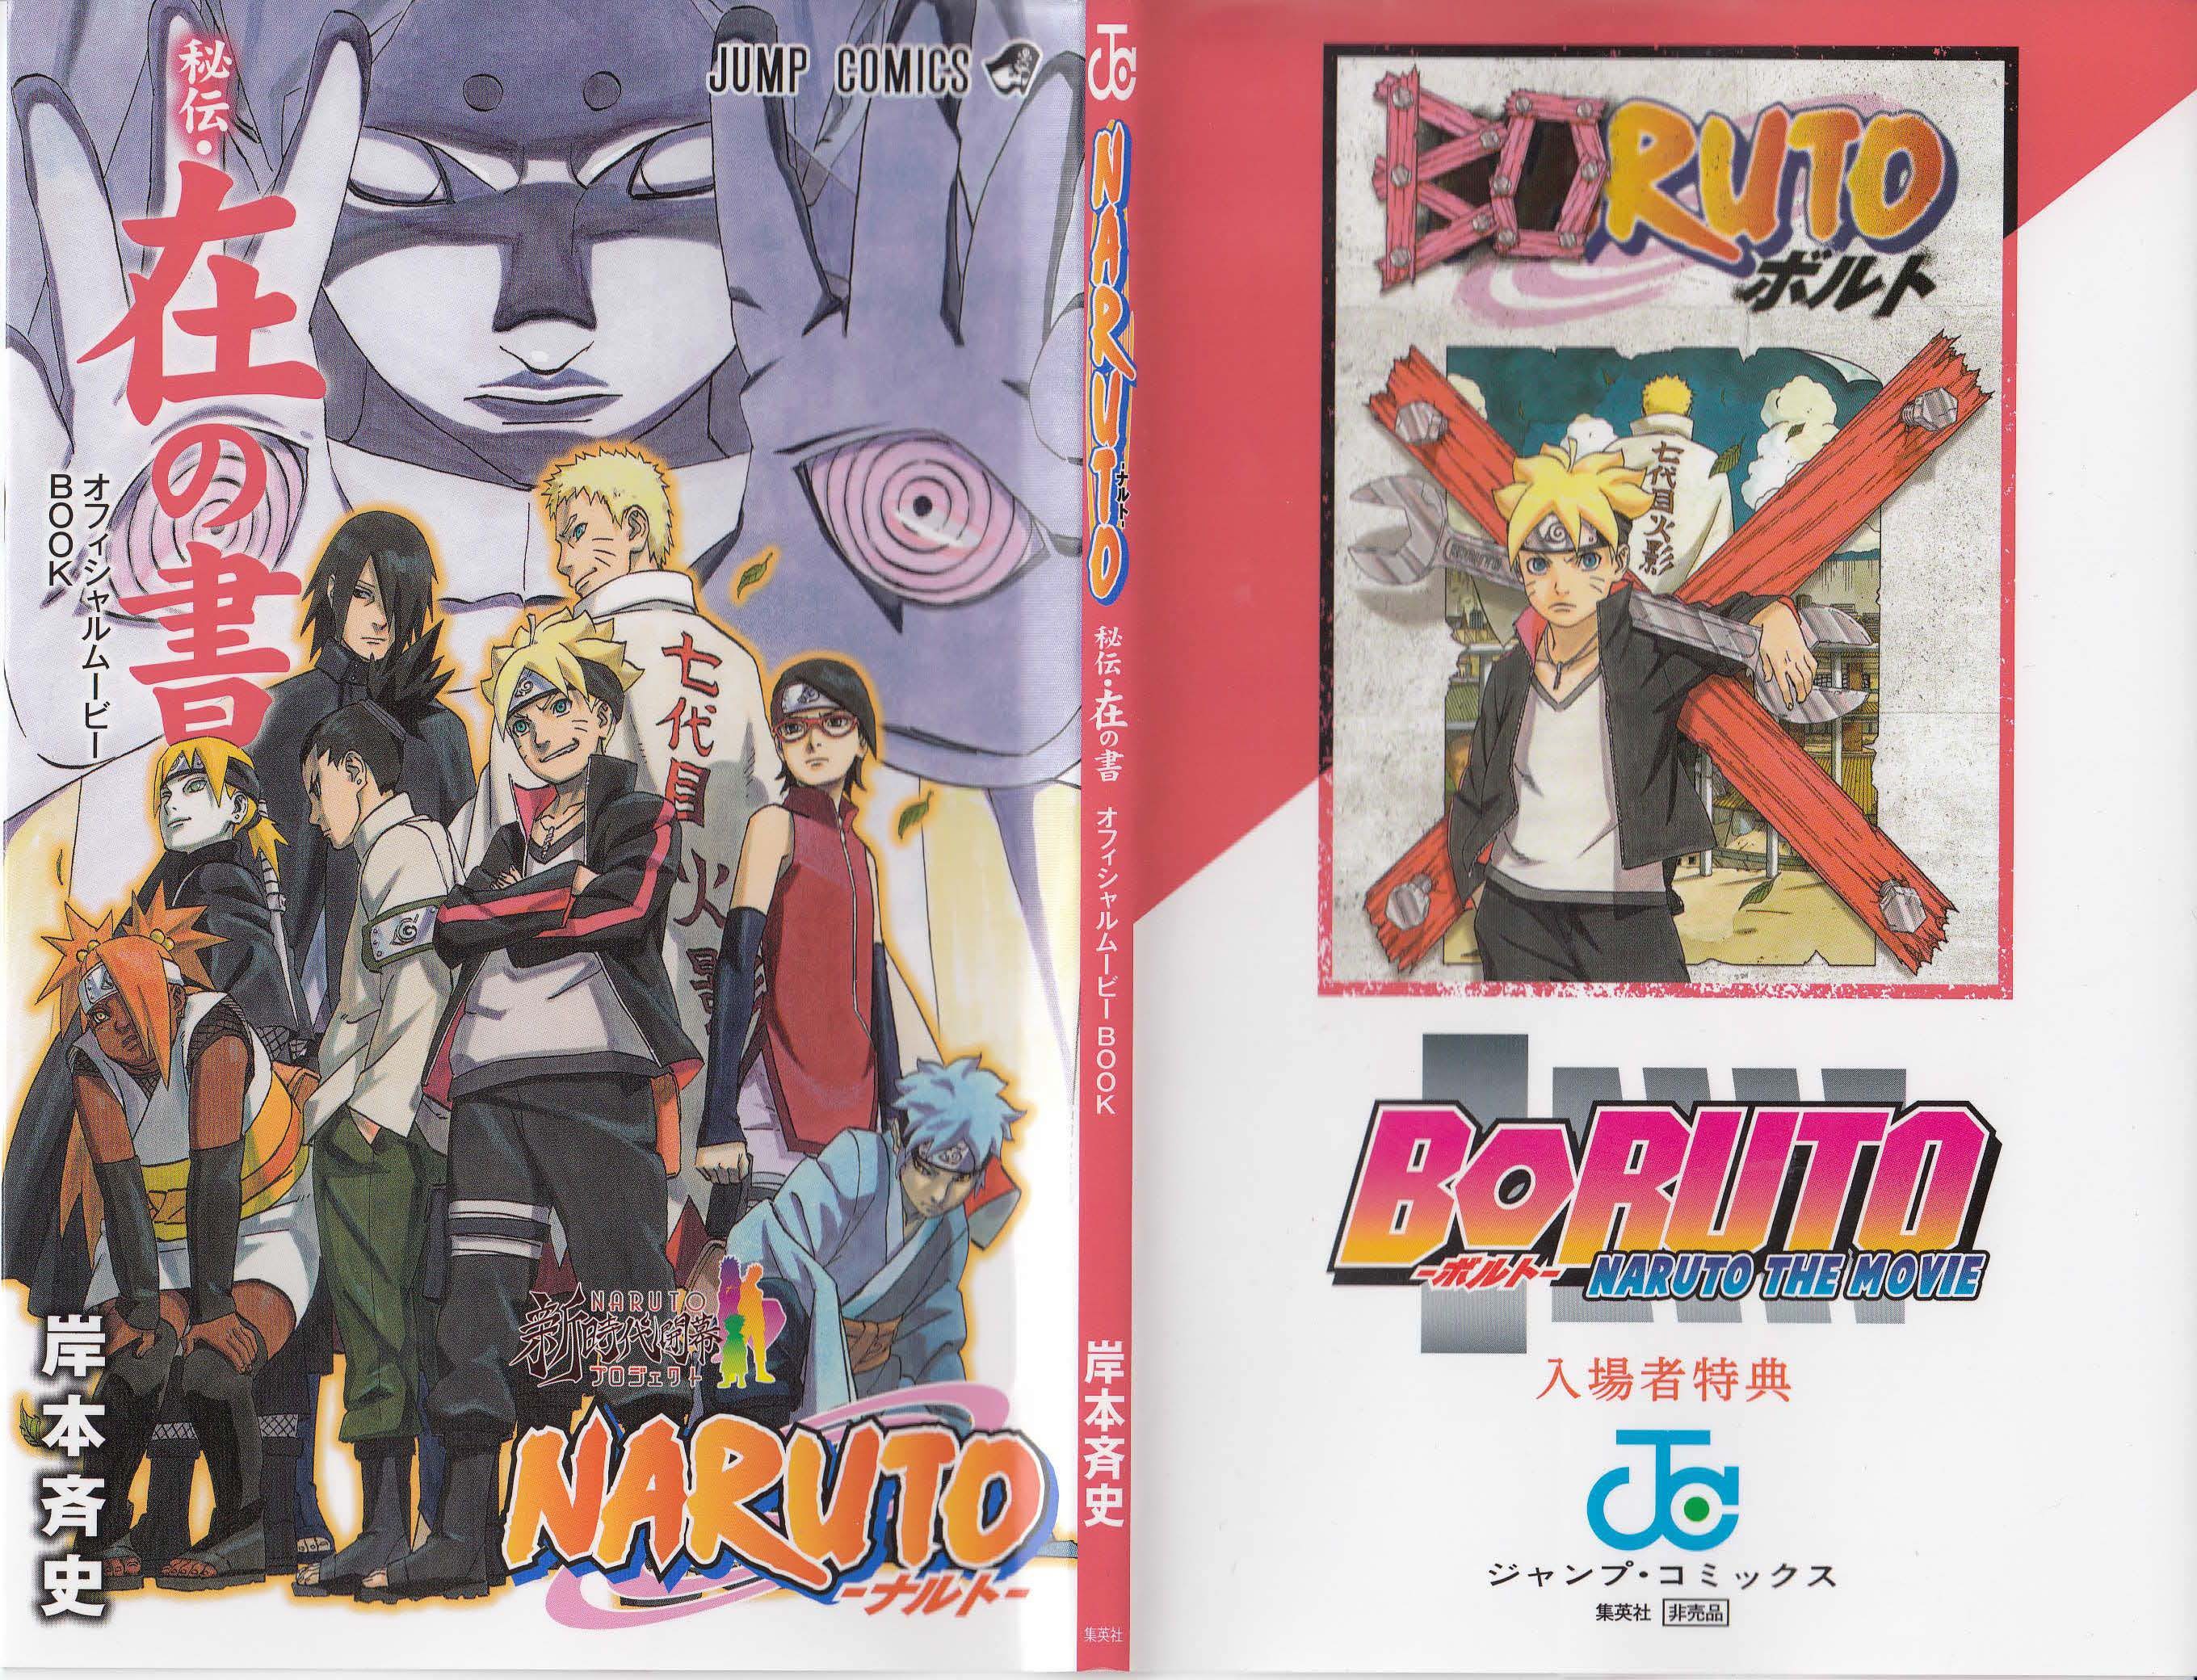 Boruto : Naruto Next Generations on X: Boruto Uzumaki in the Movie   / X